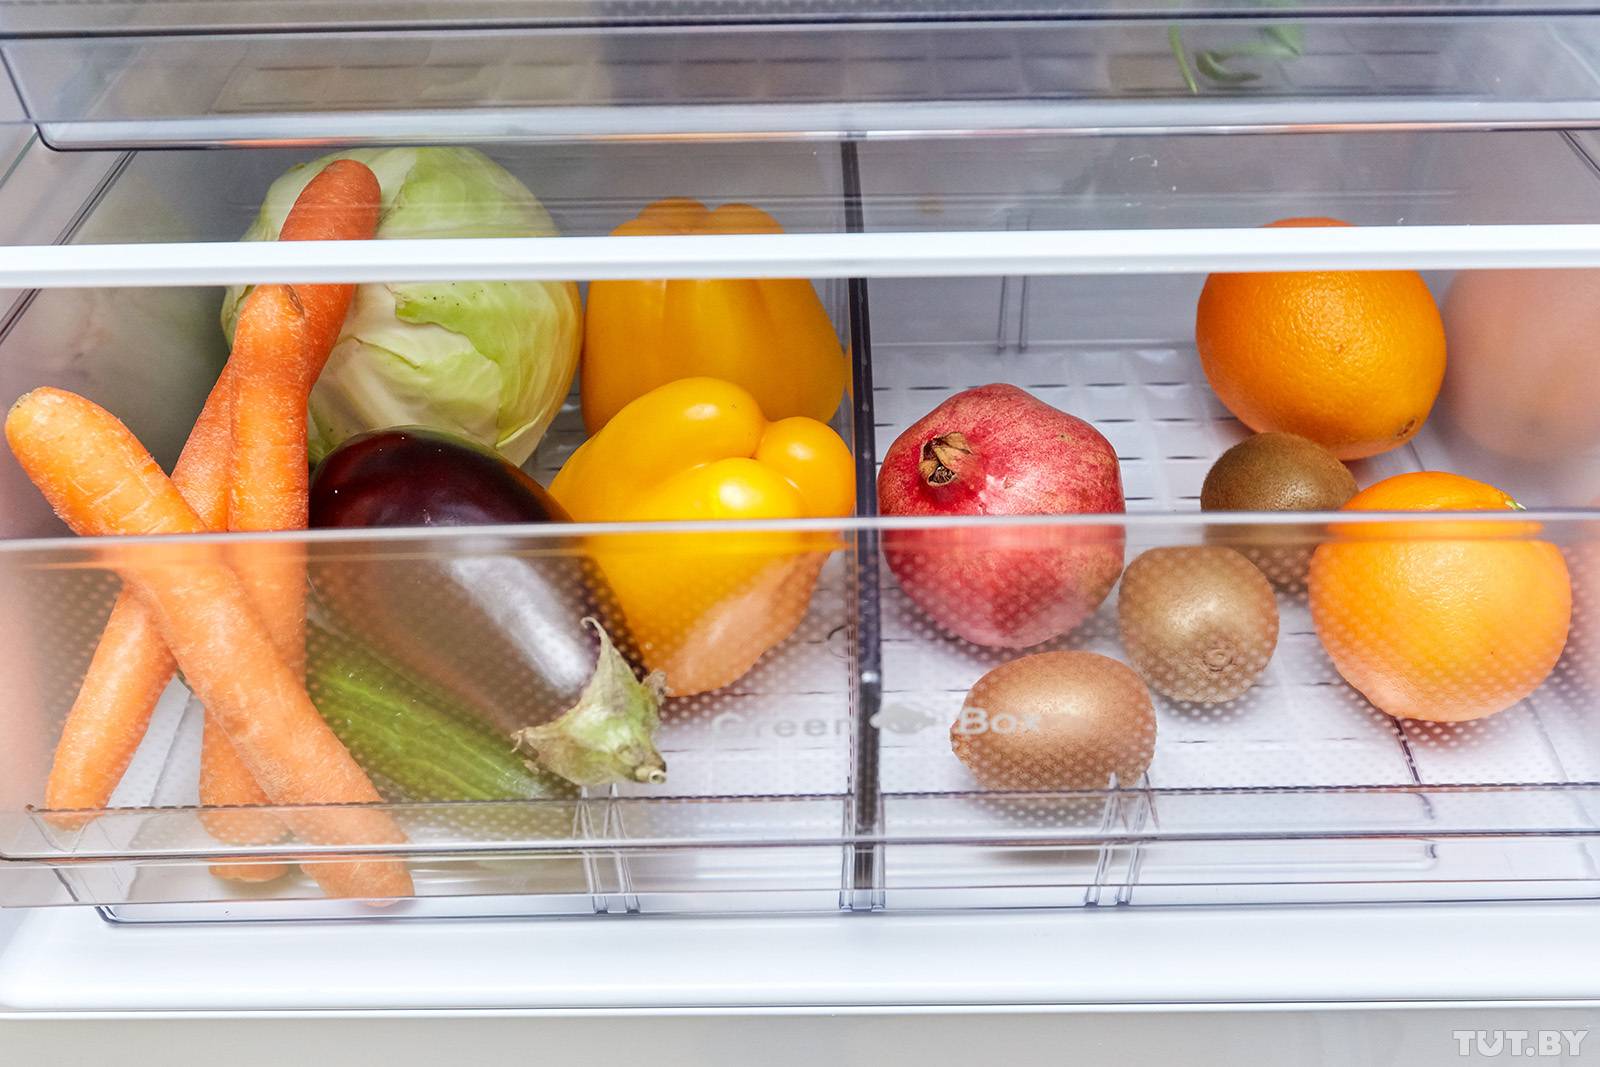 Холодильники “минск”: обзор модельного ряда + разбор частых поломок